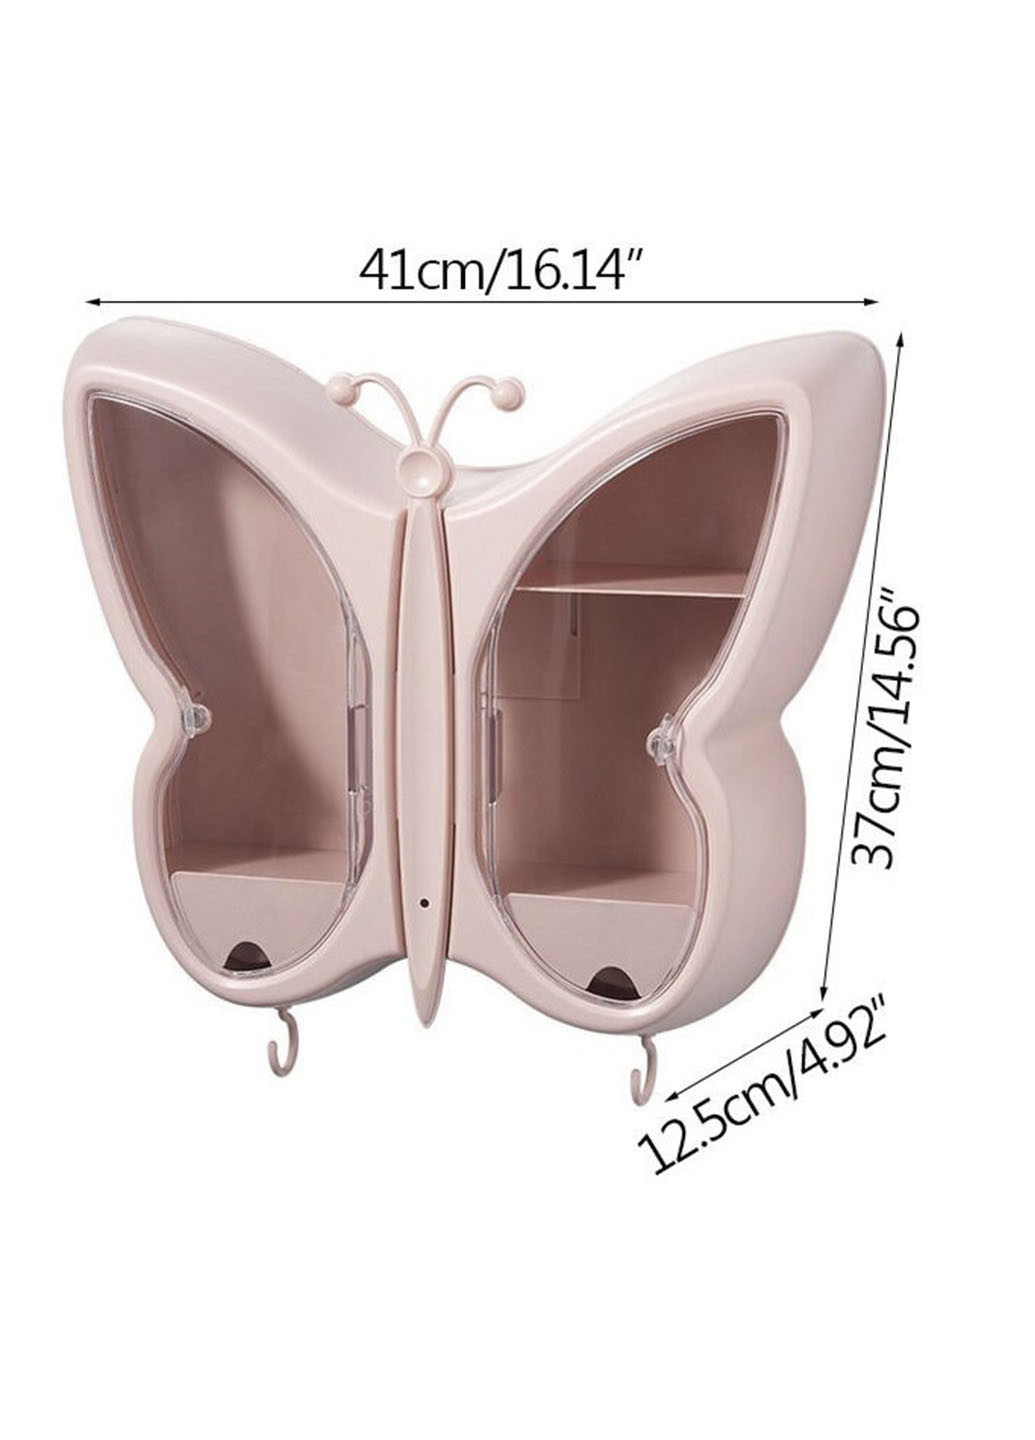 Полка для косметики Бабочка W-34 кейс для косметики органайзер бокс Good Idea однотонный розовый